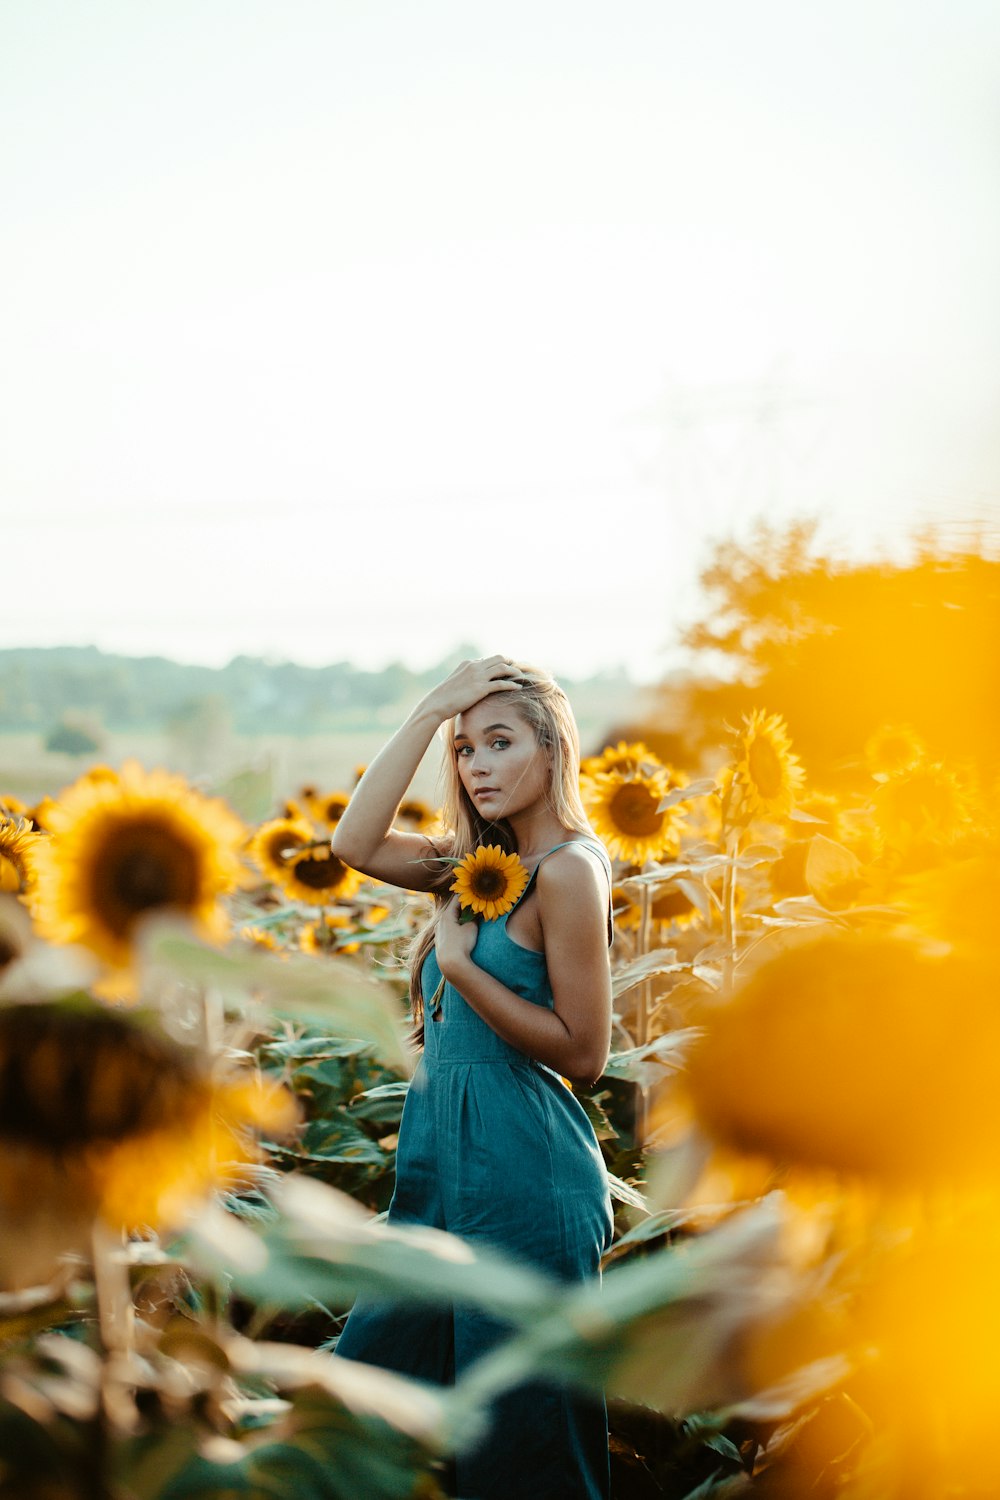 Flachfokusfotografie einer Frau, die eine gelbe Sonnenblume hält